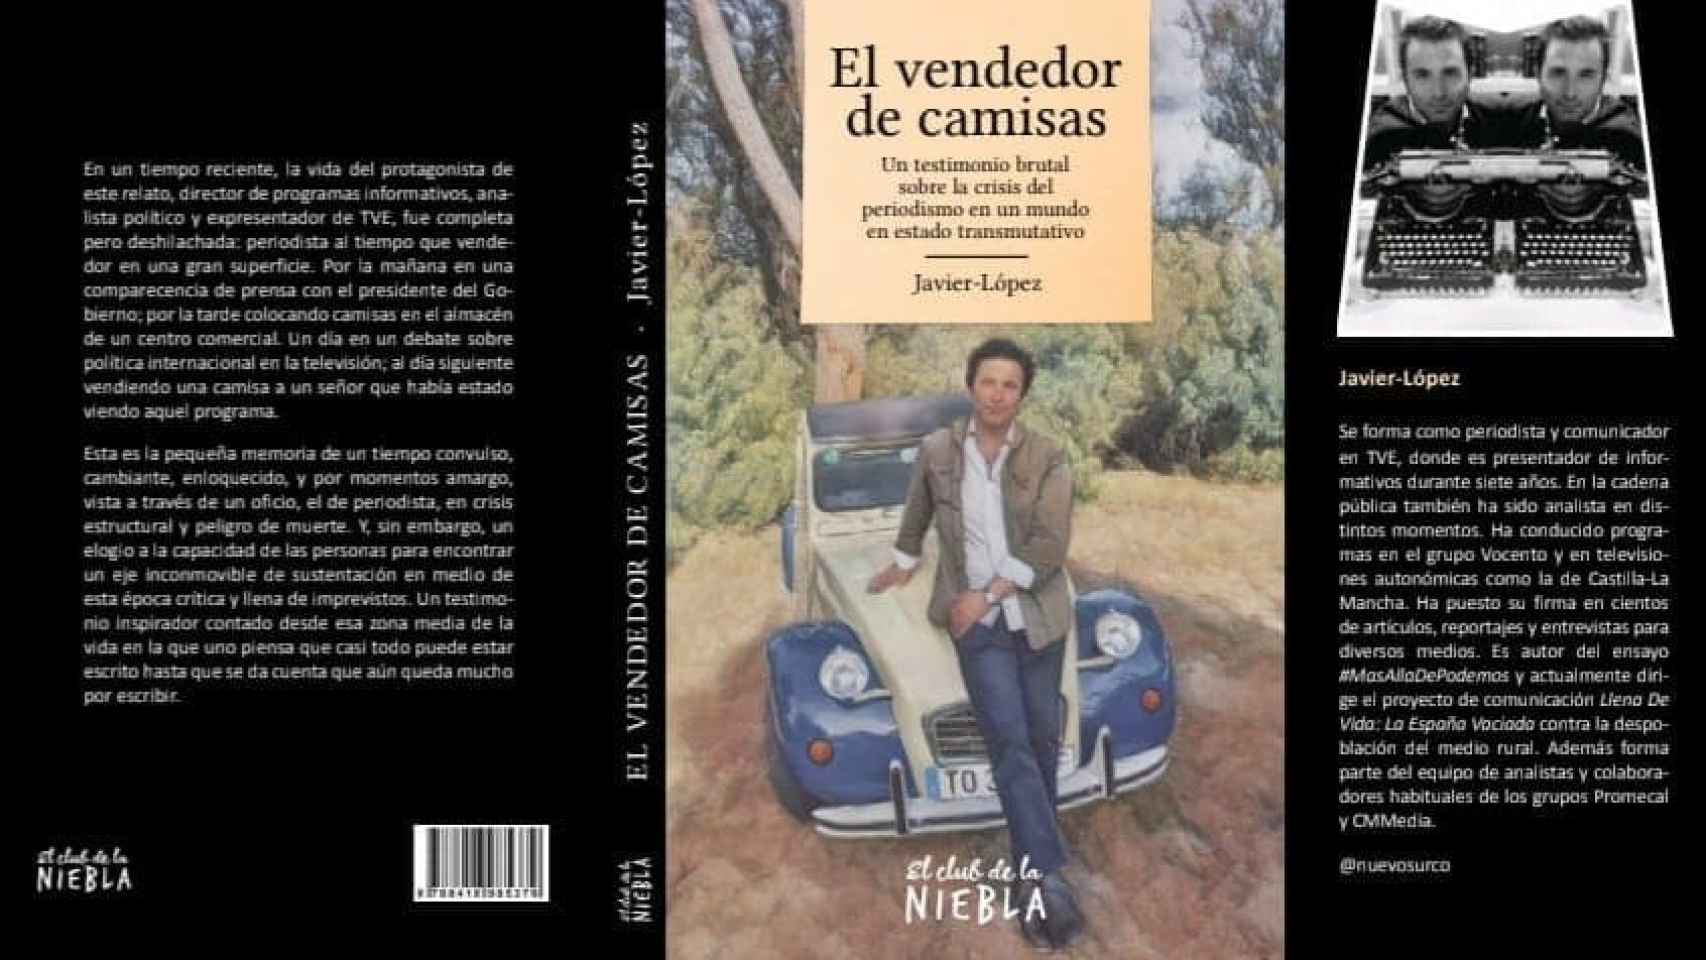 El libro de Javier-López